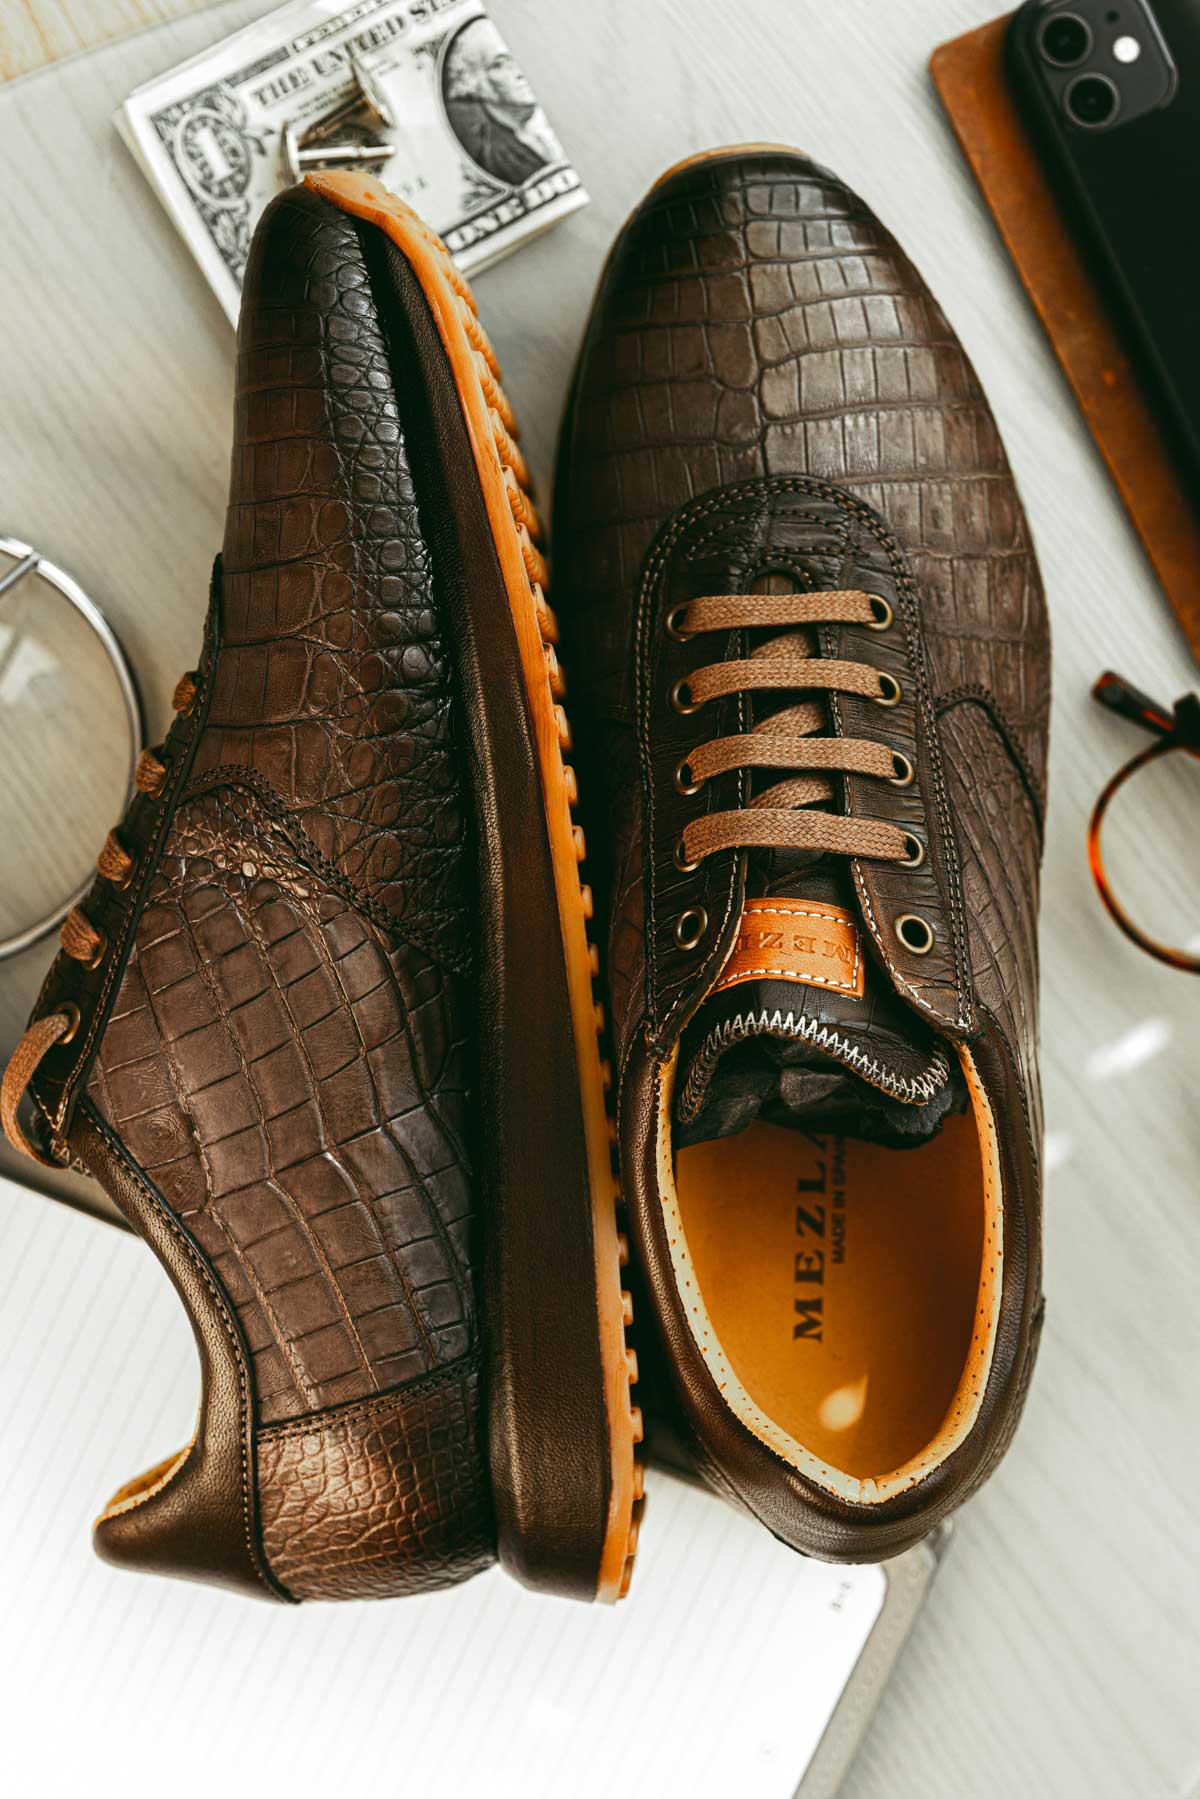 Men's Designer Shoes, Luxury Men's Shoes